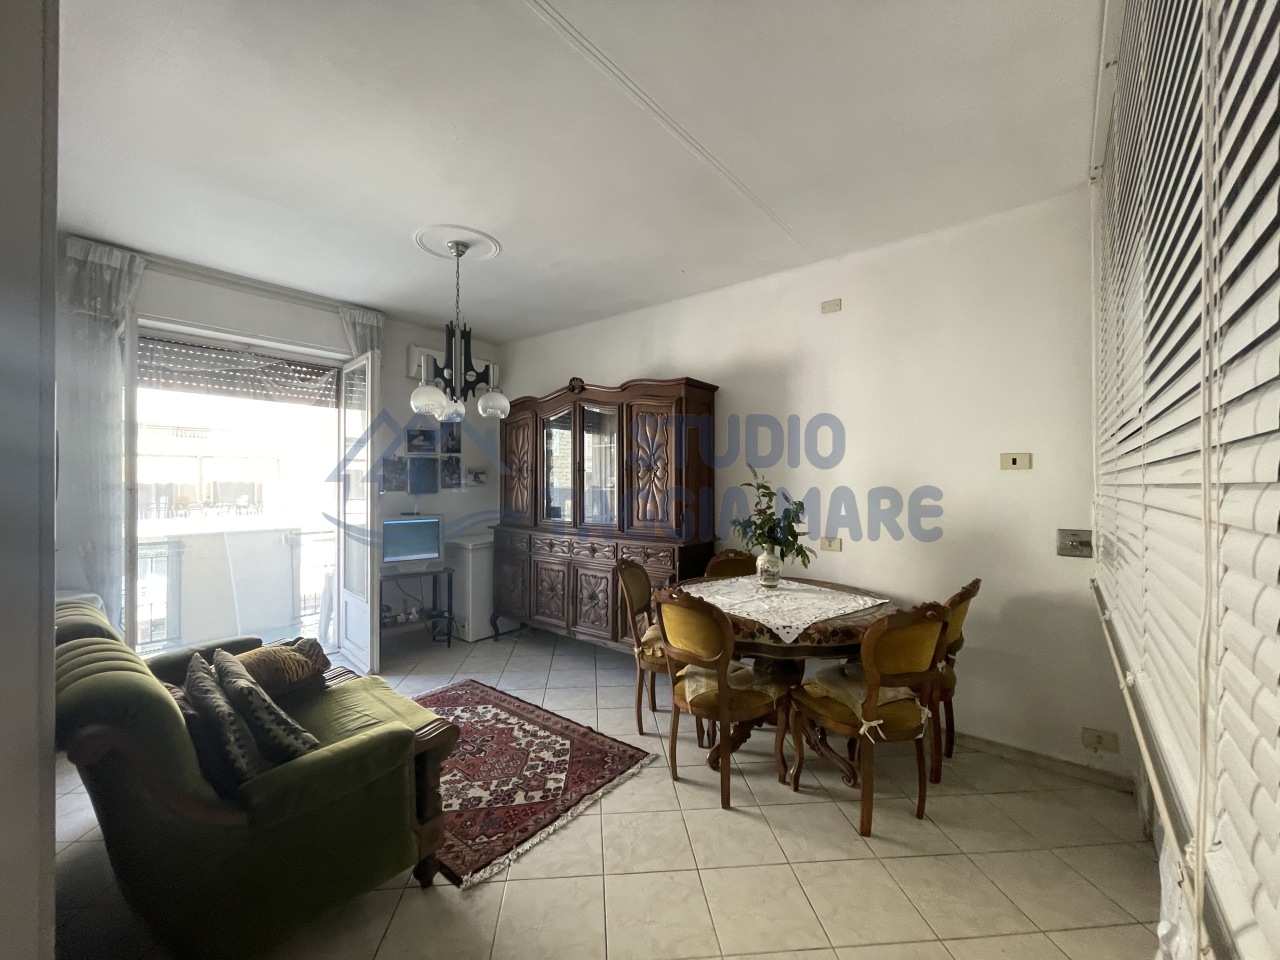 Appartamento in vendita a Taggia, 2 locali, prezzo € 170.000 | PortaleAgenzieImmobiliari.it